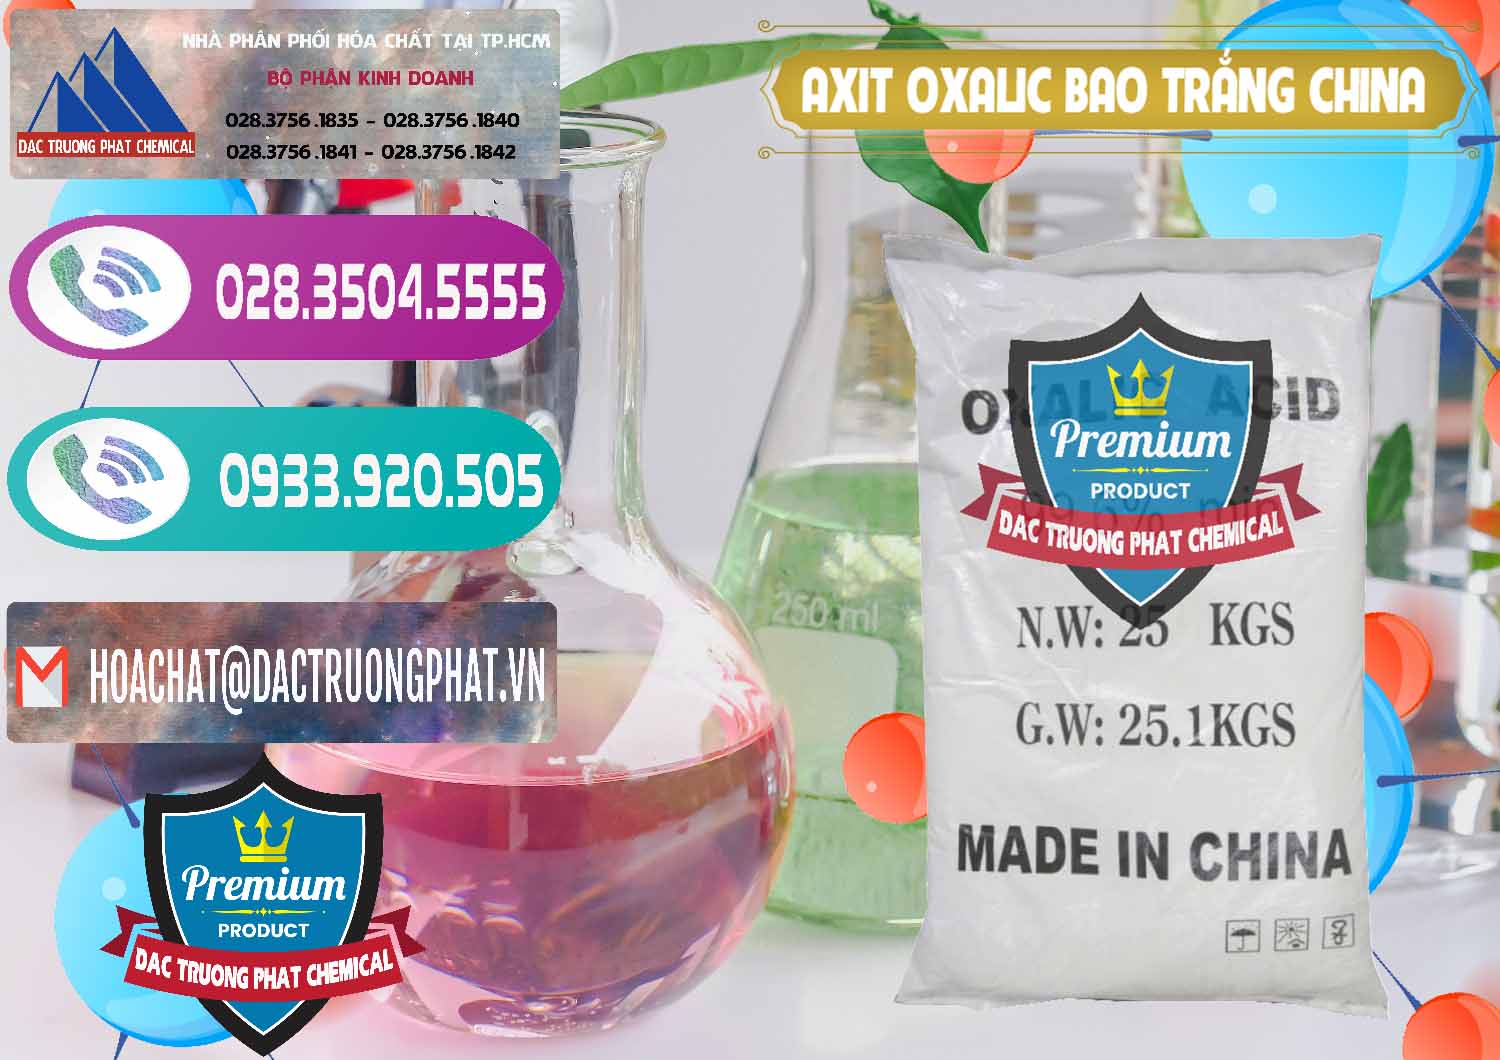 Chuyên bán ( cung cấp ) Acid Oxalic – Axit Oxalic 99.6% Bao Trắng Trung Quốc China - 0270 - Cung cấp & nhập khẩu hóa chất tại TP.HCM - hoachatxulynuoc.com